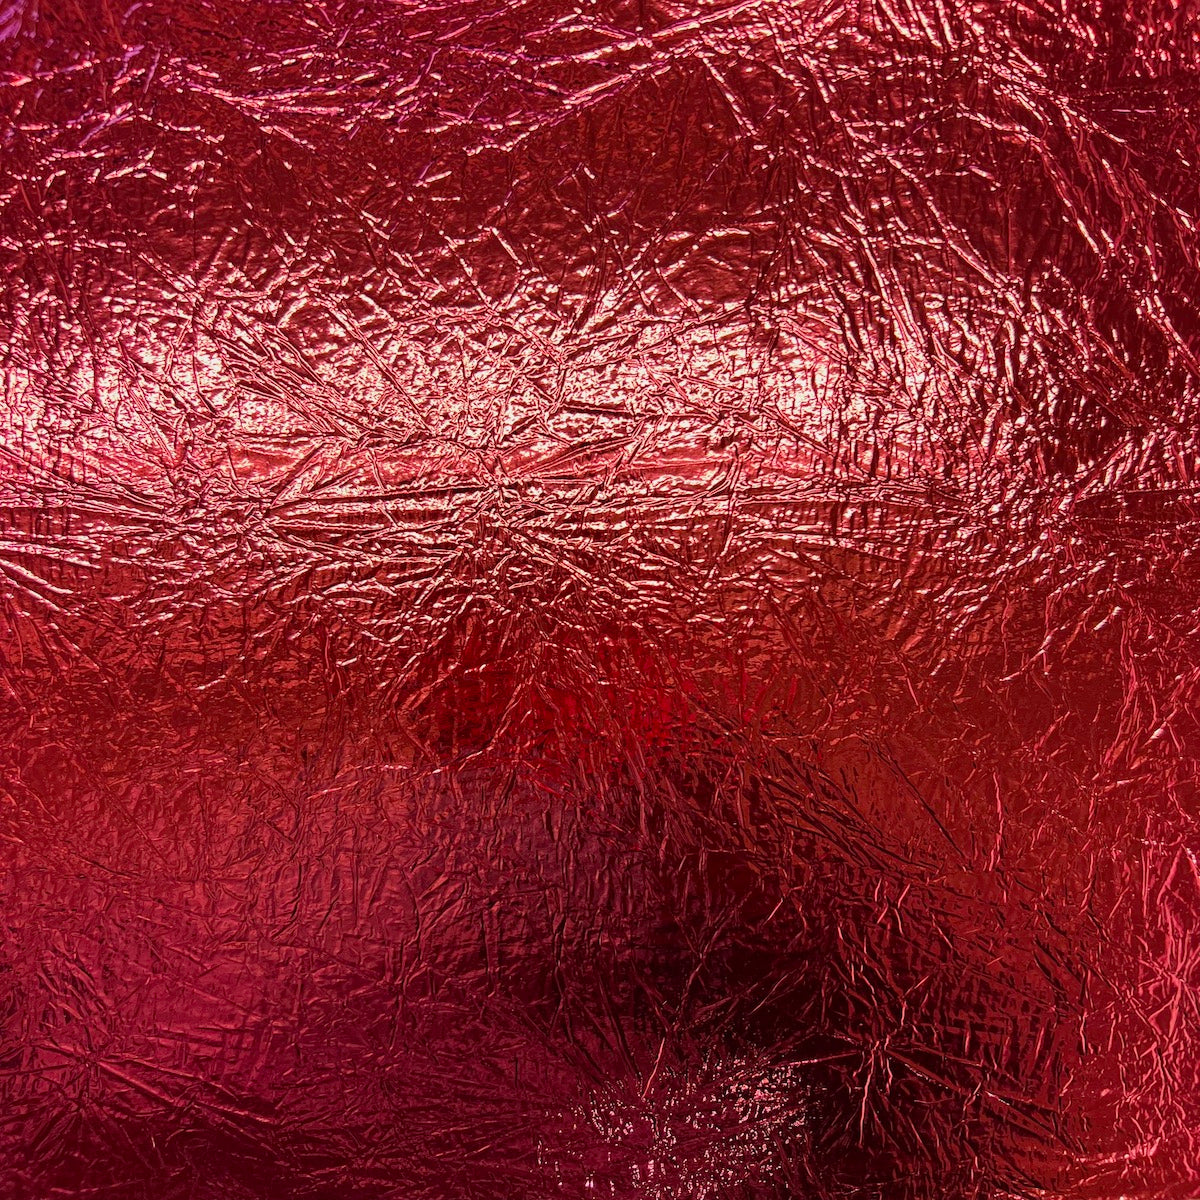 Tela de vinilo reflectante con espejo cromado desgastado triturado rojo 